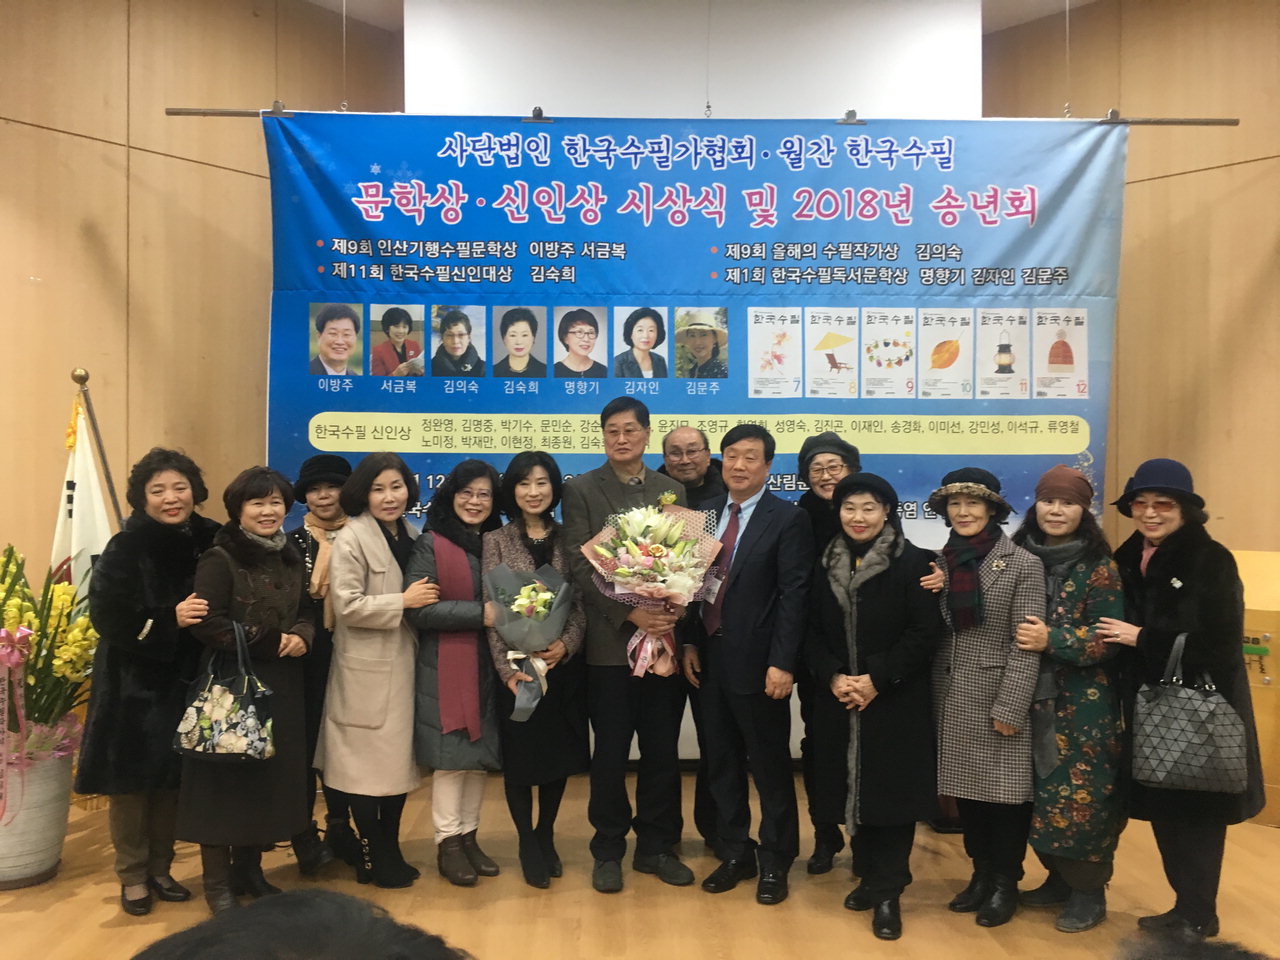 이방주 수필가가 한국수필가협회에서 주관하는 제9회 인산기행수필문학상을 수상했다. / 이방주 수필가